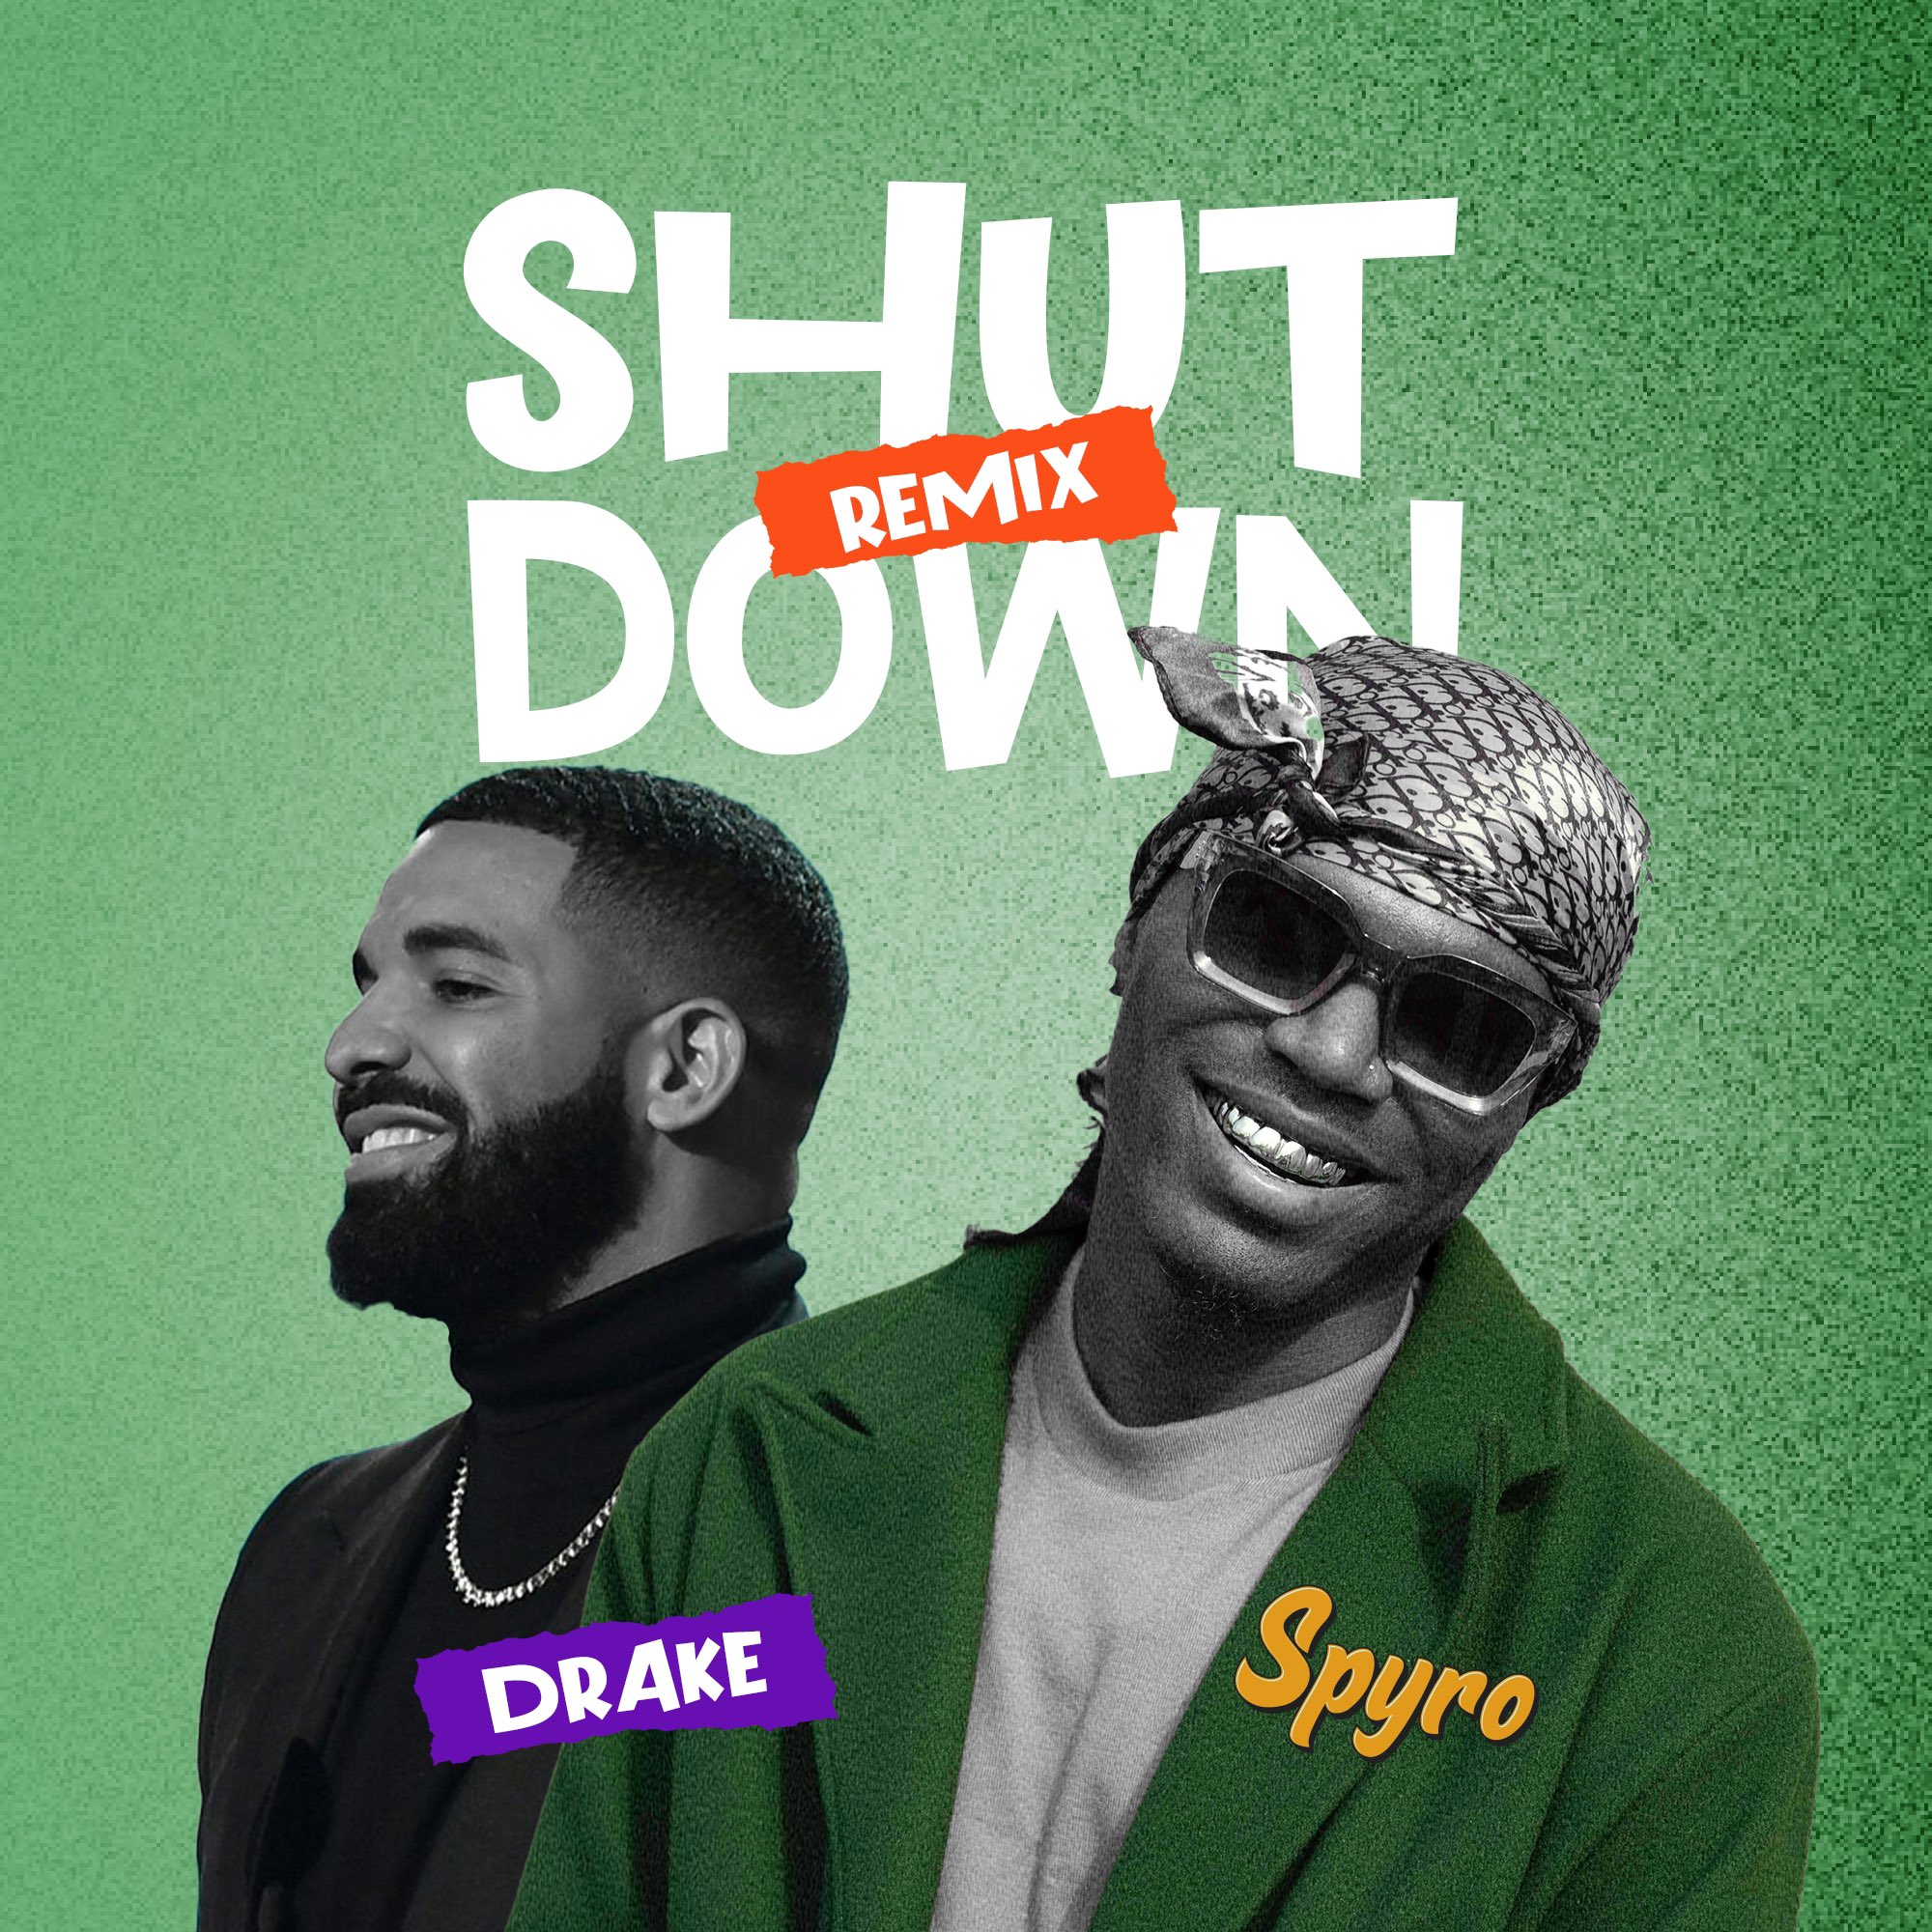 Spyro supostamente irá colaborar com Drake no remix de Shut Down